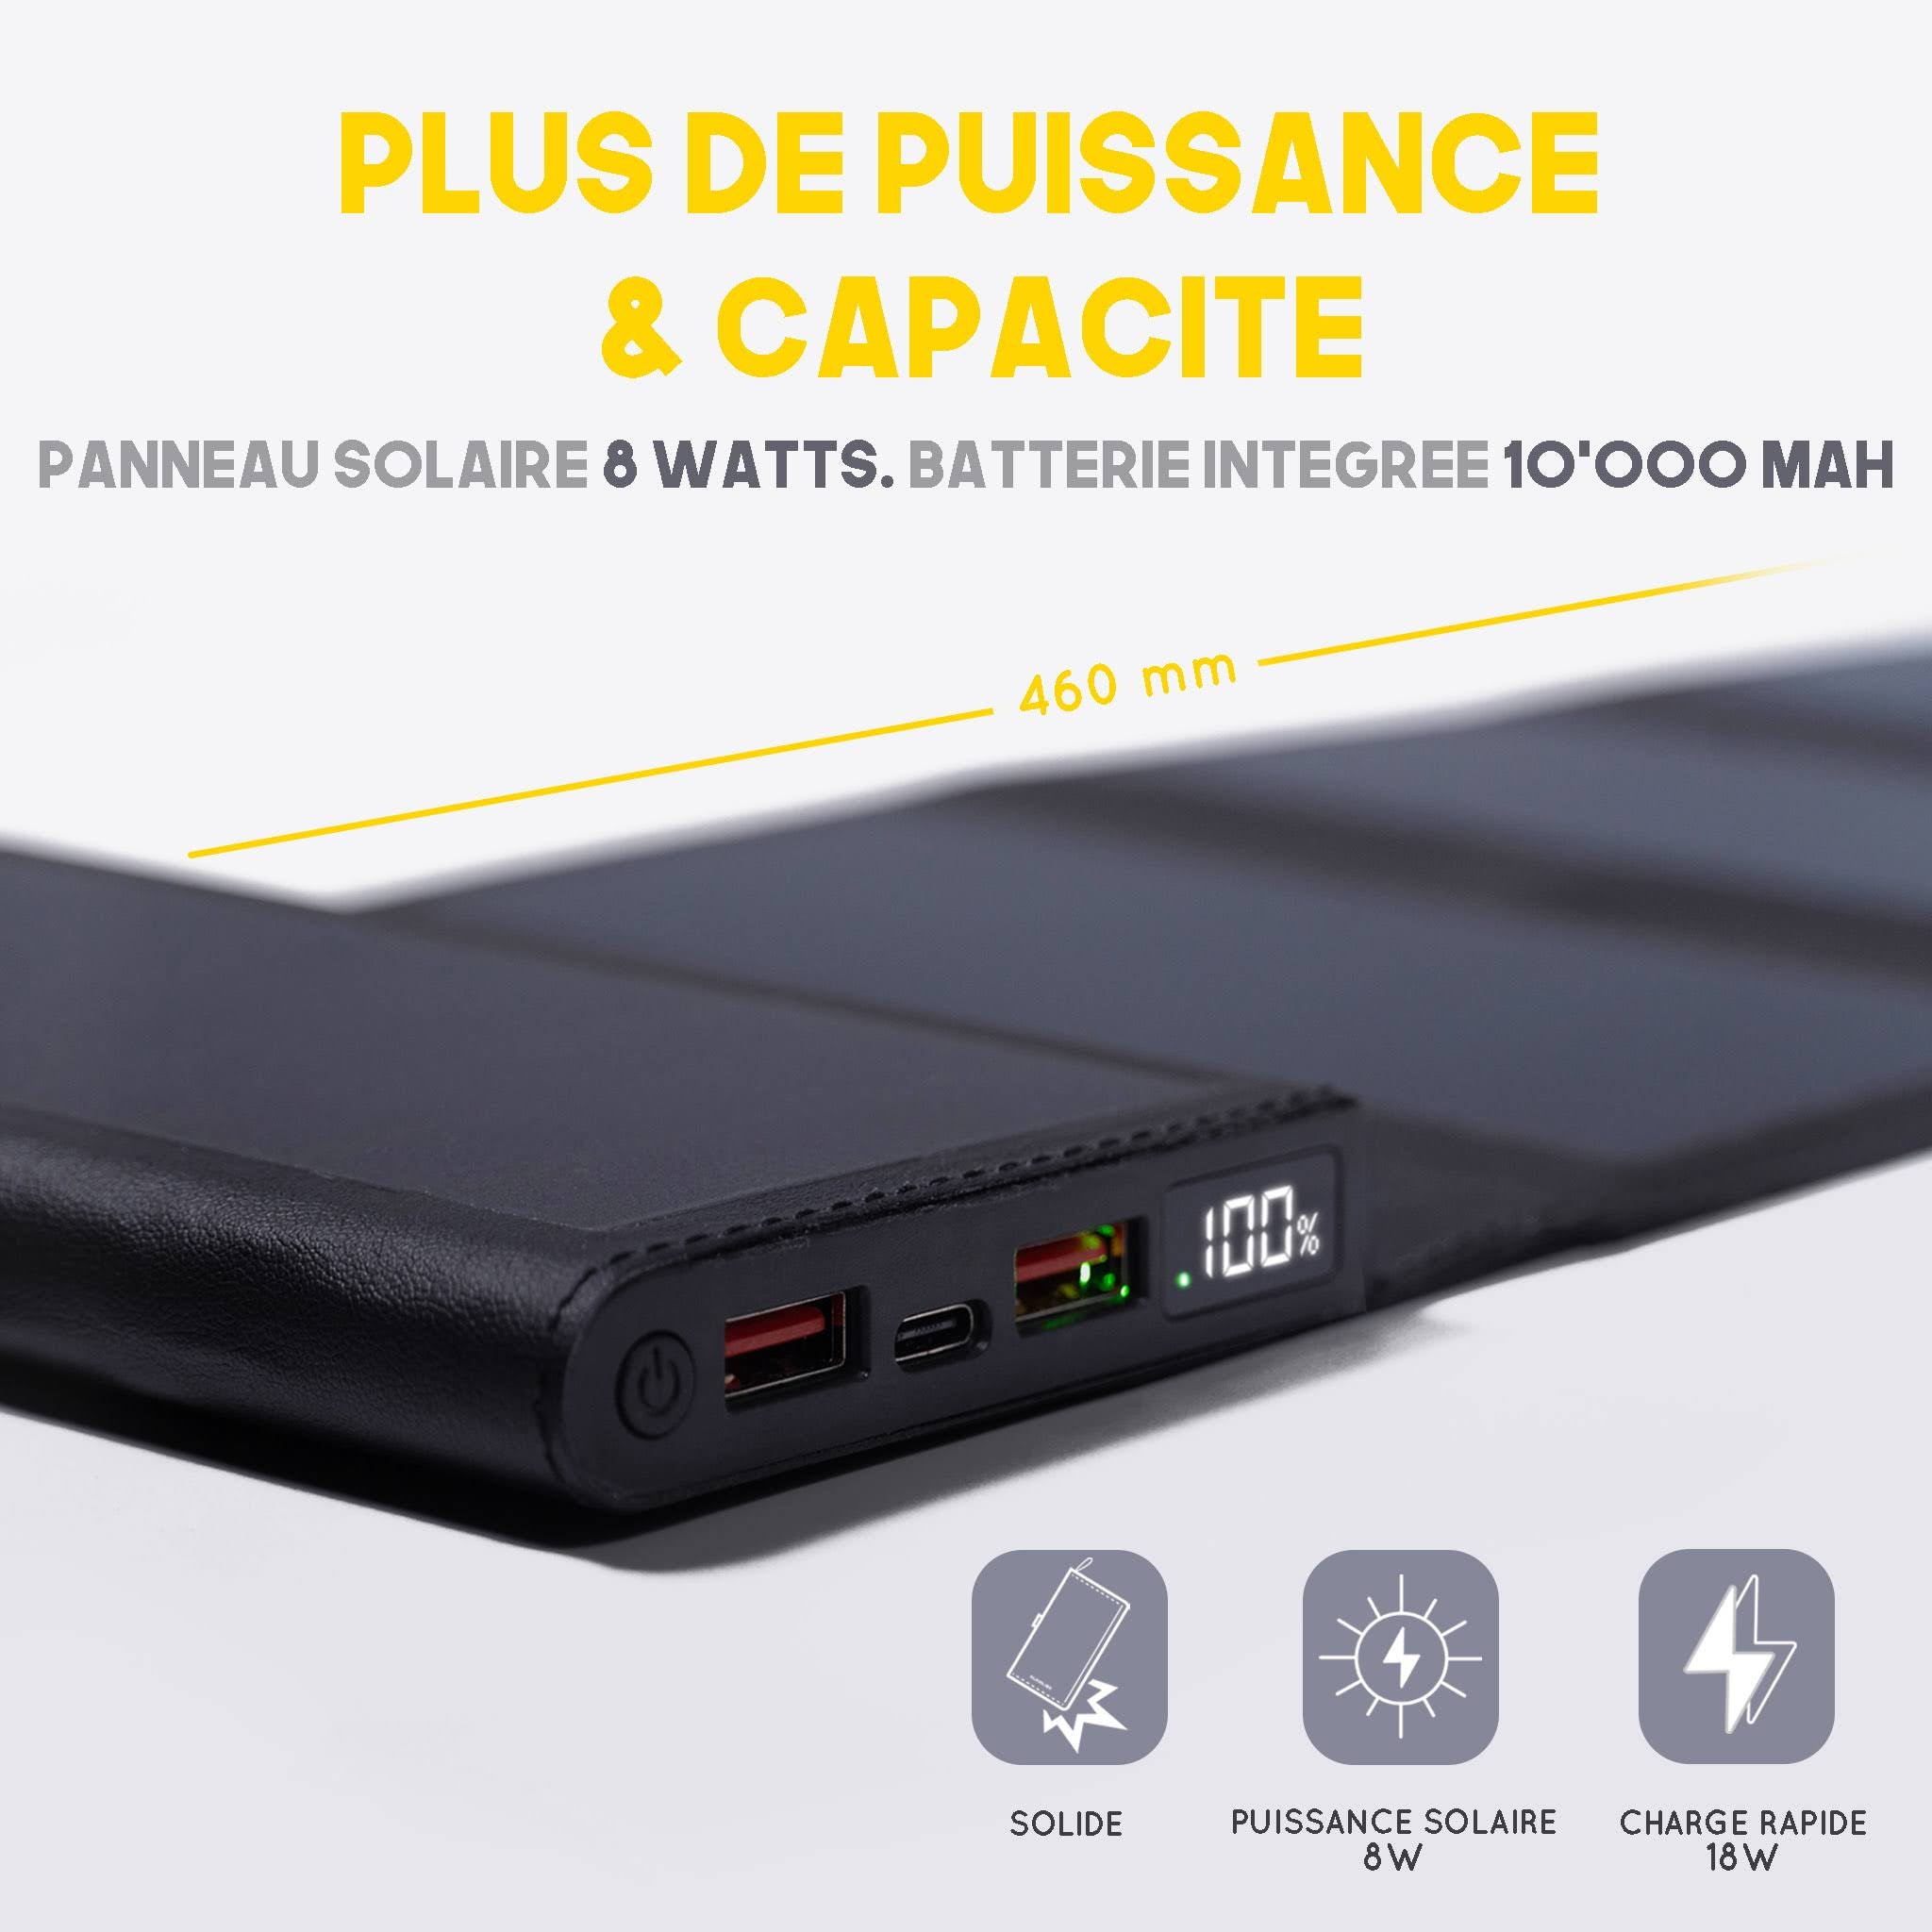 Nouveau chargeur solaire portable de Sunslice avec batterie externe intégrée de 10000mAh